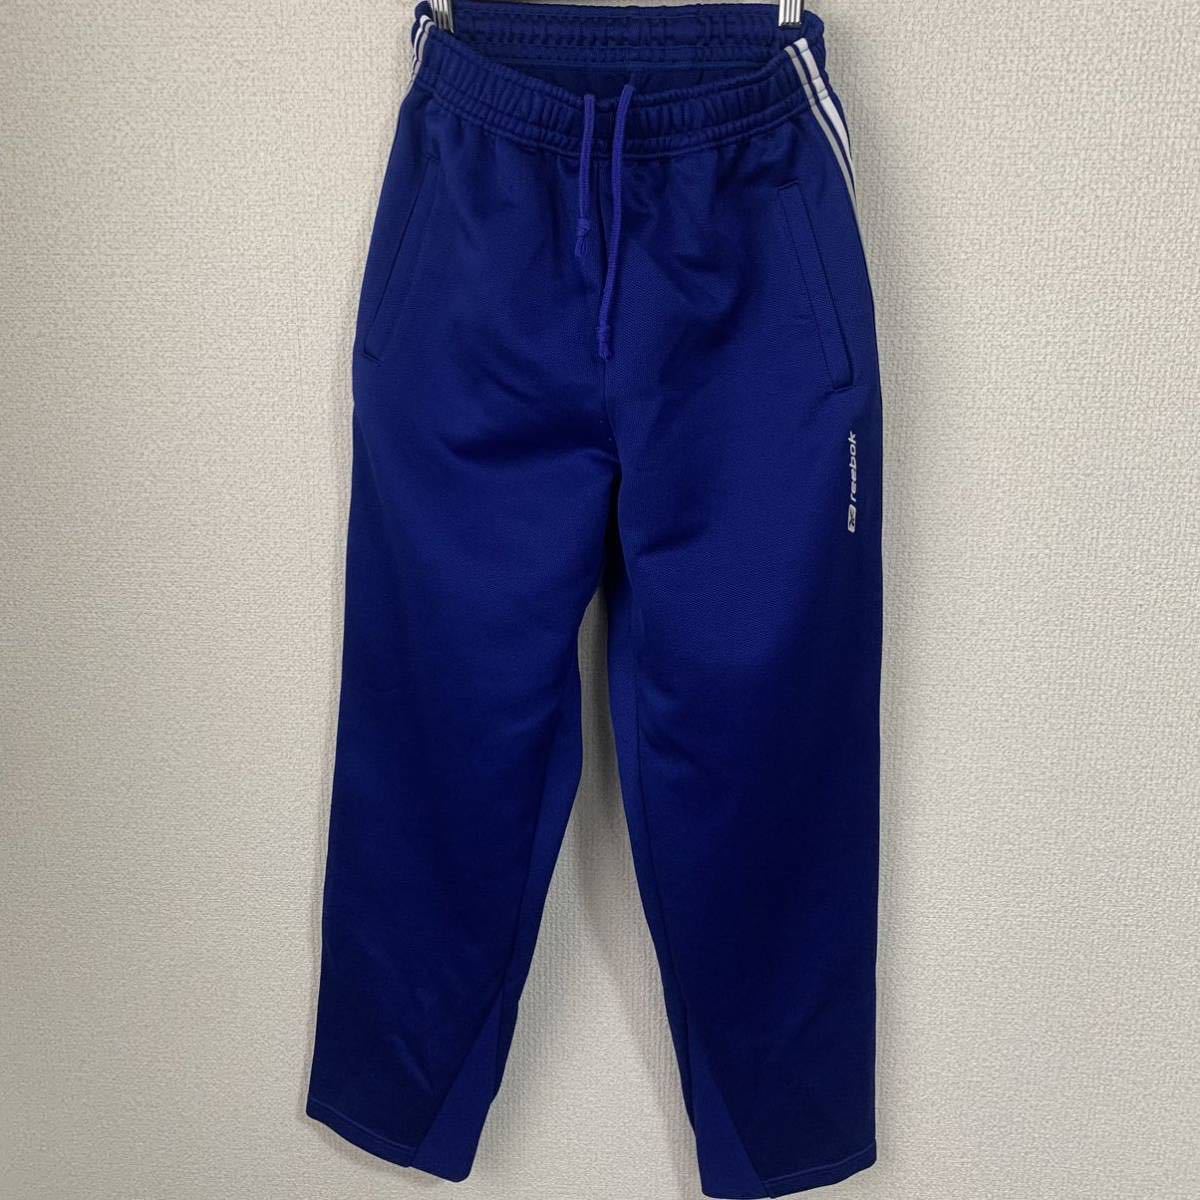 【USED】Reebok リーボック ジャージパンツ パンツ メンズSSサイズ 青 ブルー 体育服 レトロパンツの画像1